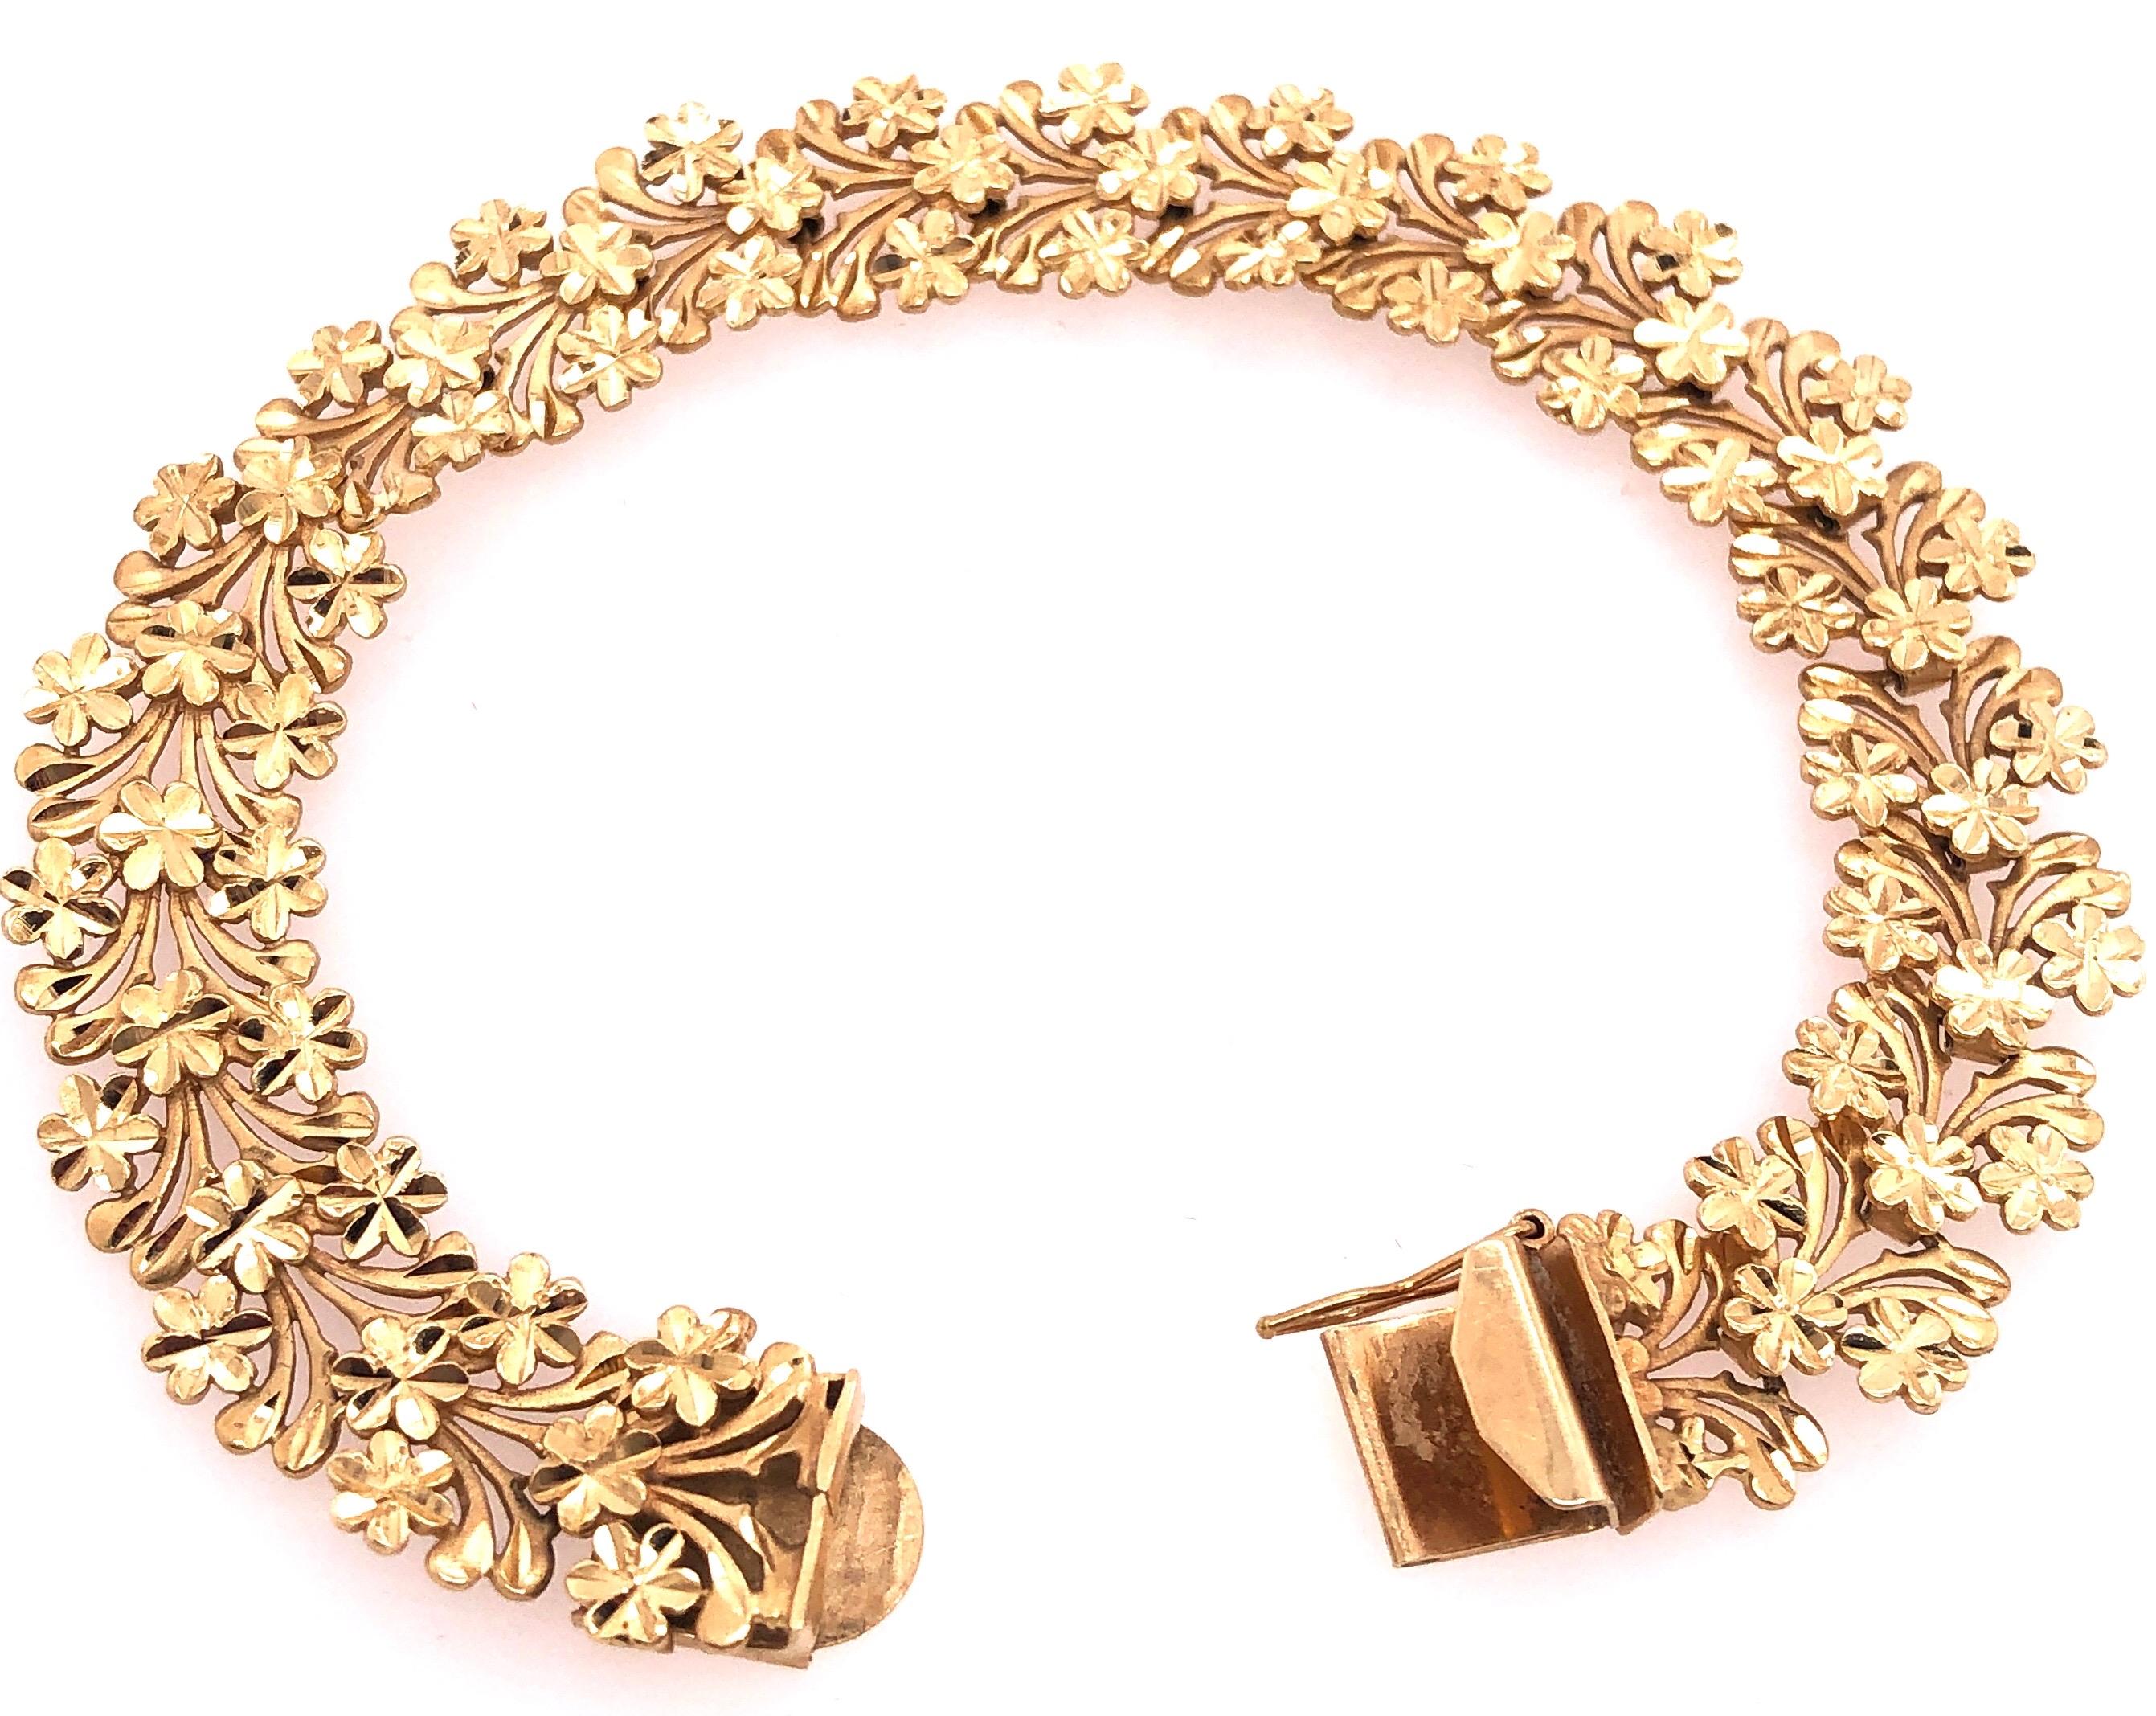 14 Karat Yellow Gold 8 inch Fashion Bracelet
17.6 grams total weight.